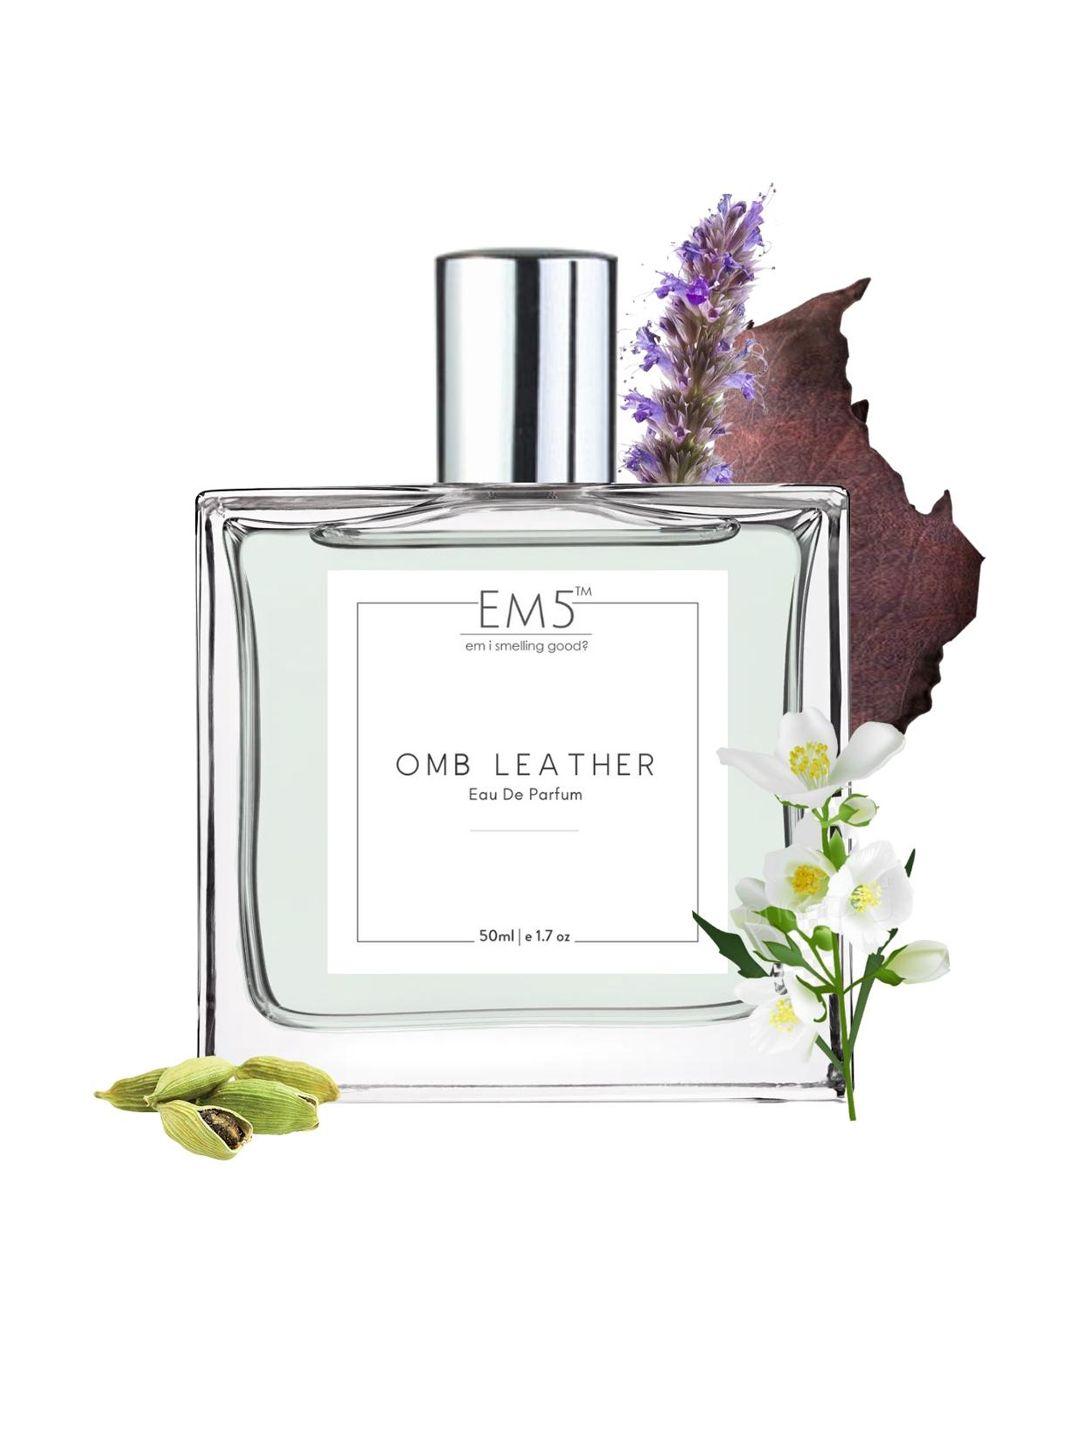 em5 omb leather eau de parfum - 50ml